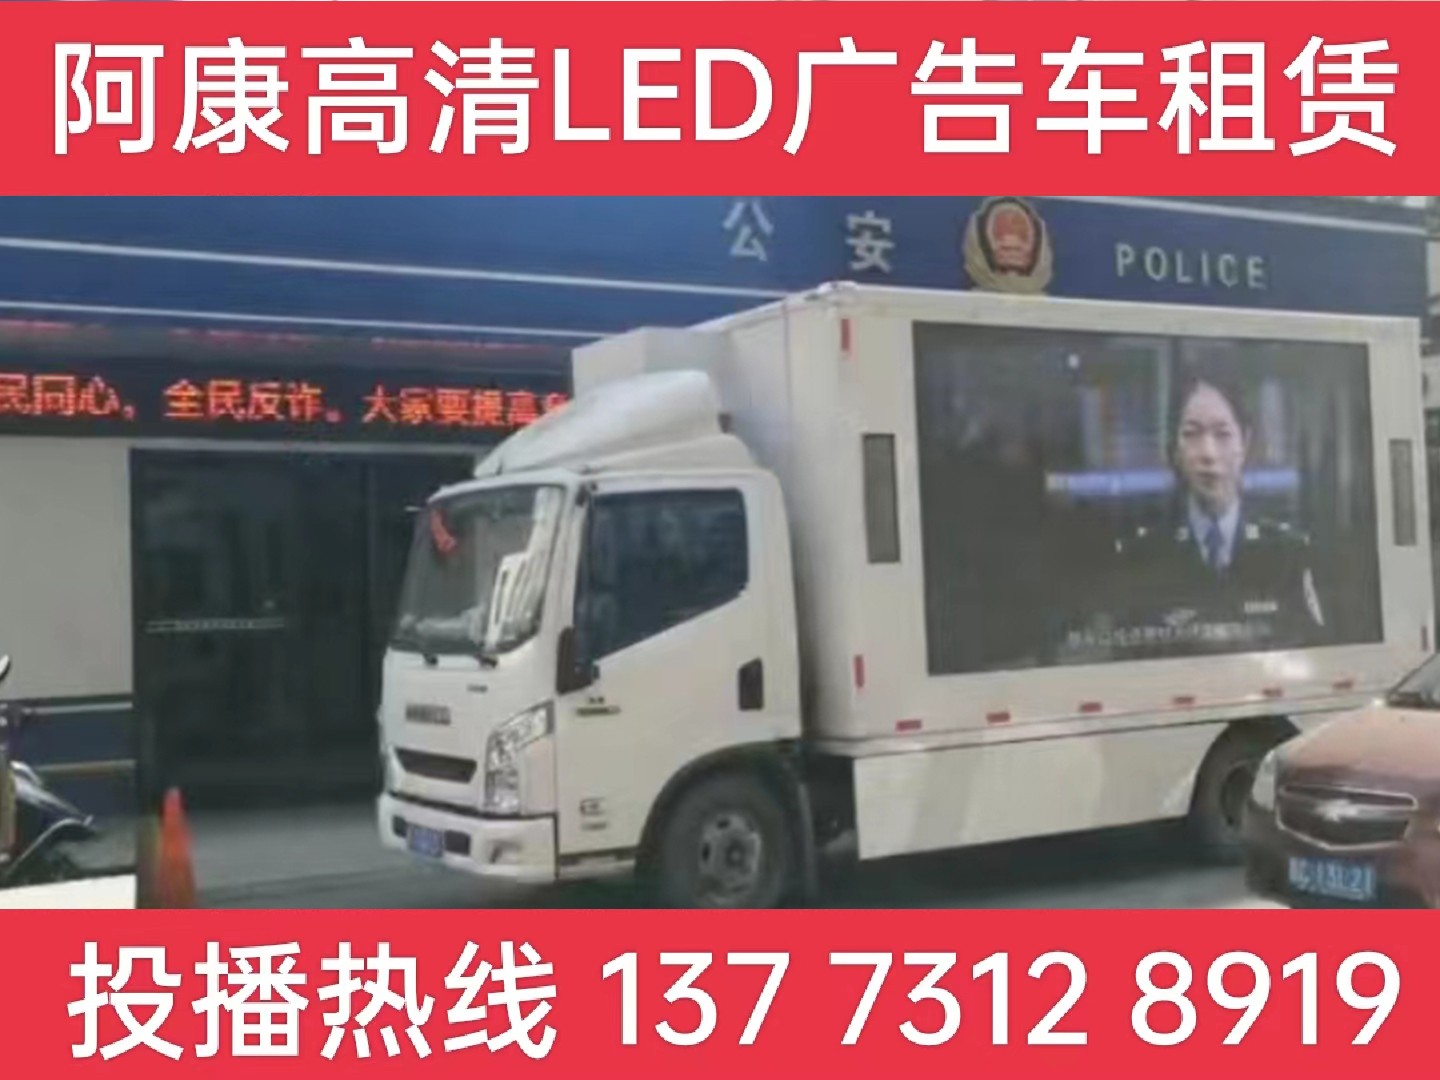 昆山LED广告车租赁-反诈宣传